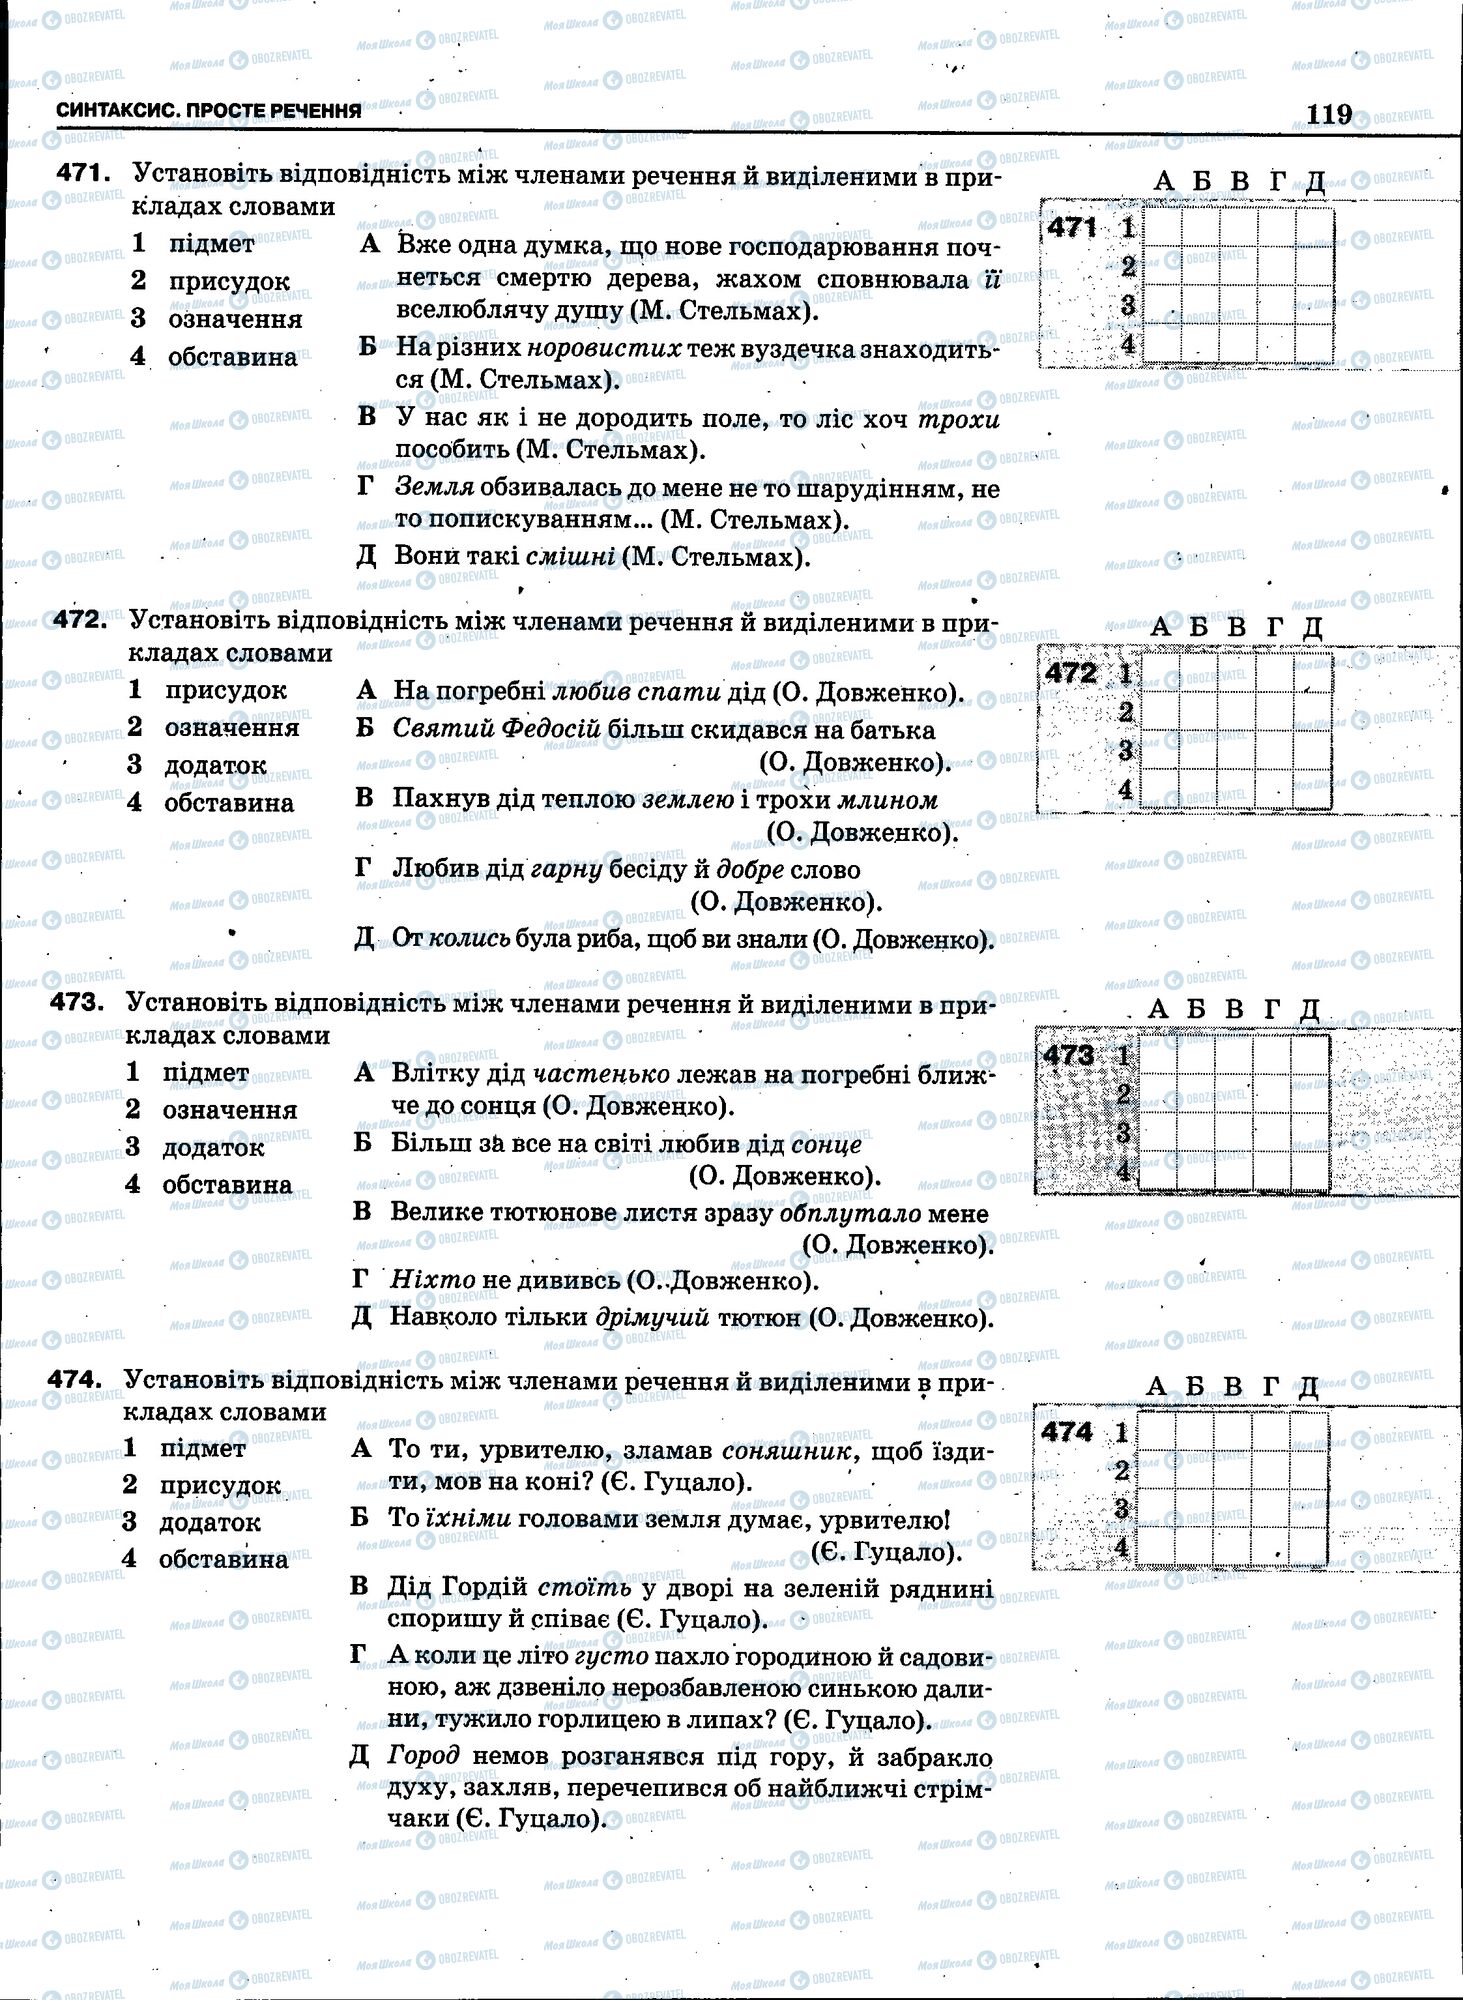 ЗНО Укр мова 11 класс страница 117